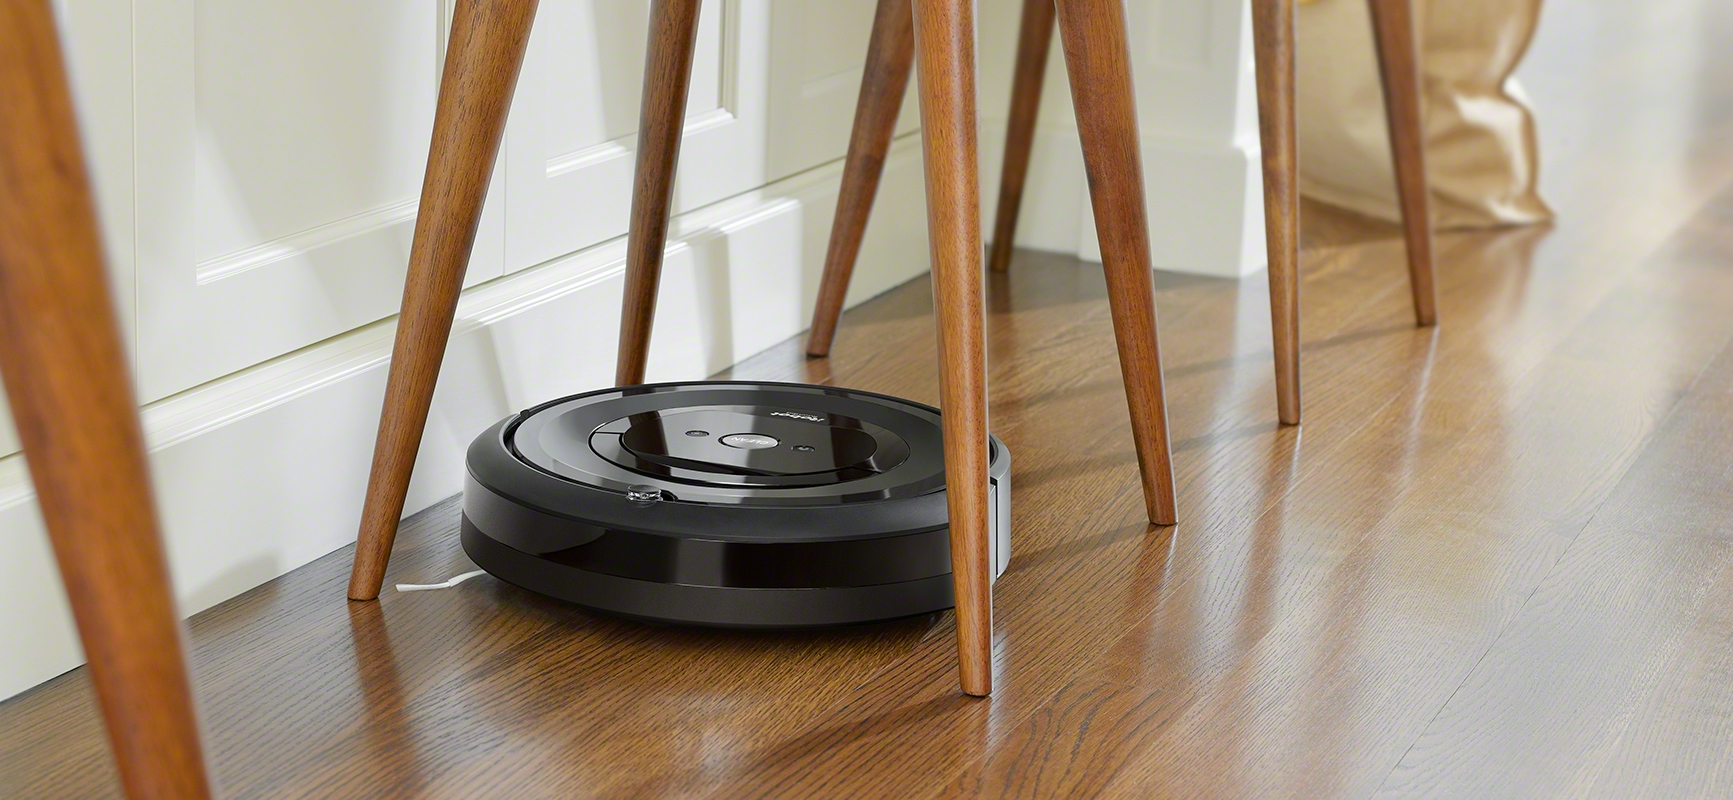 iRobot Roomba e5 odkurza między nogami krzesła